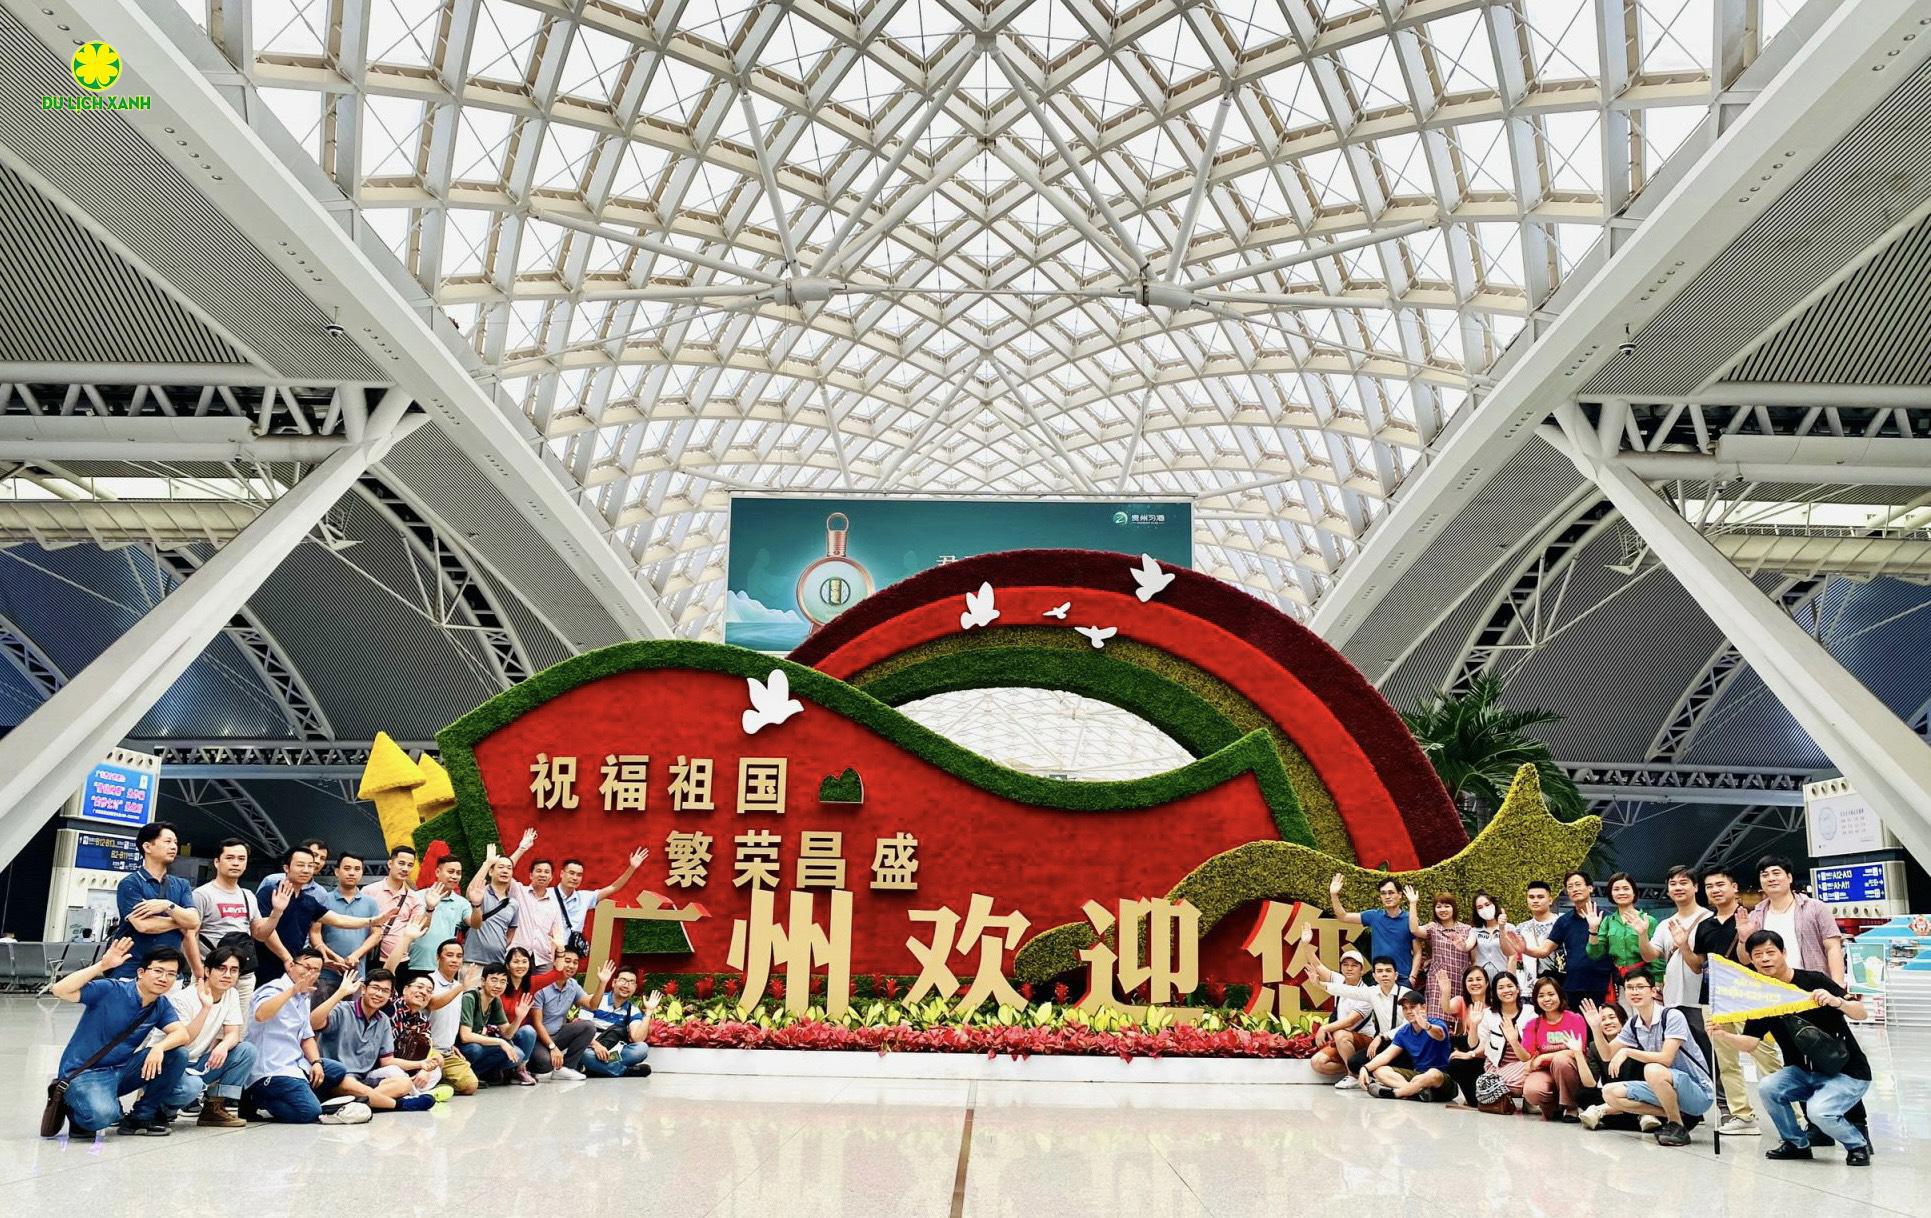 Hội chợ Canton Fair Trung Quốc 2023 lần thứ 134